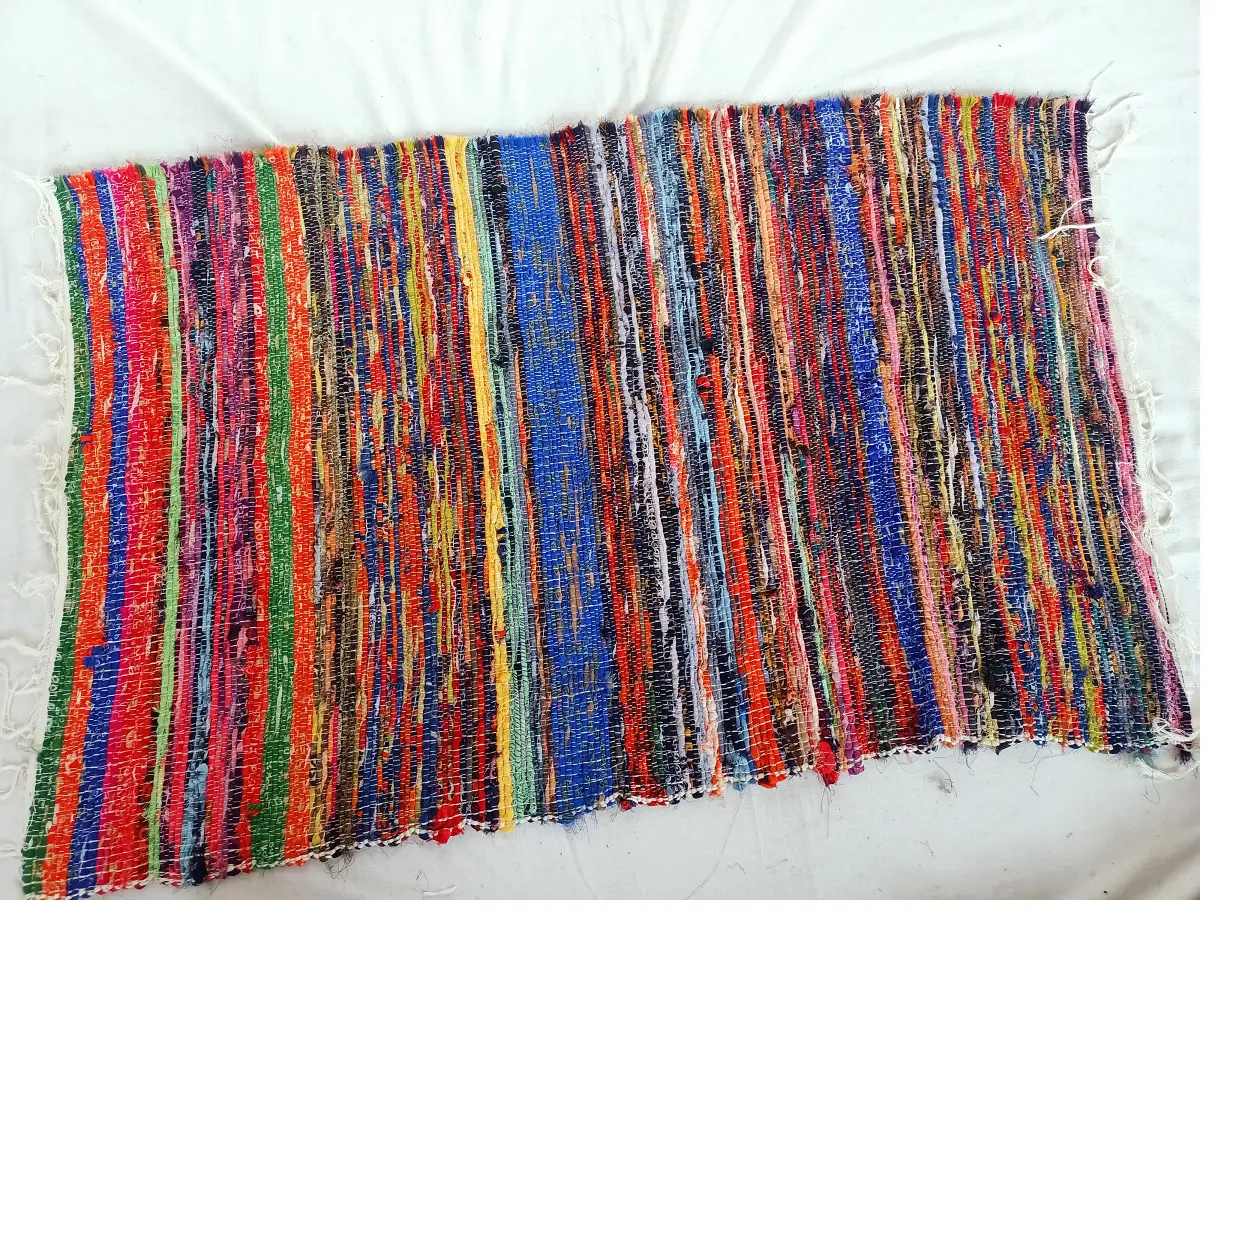 Tappeti in tessuto riciclato su misura realizzati con tessuti riciclati multicolori adatti per interior designer